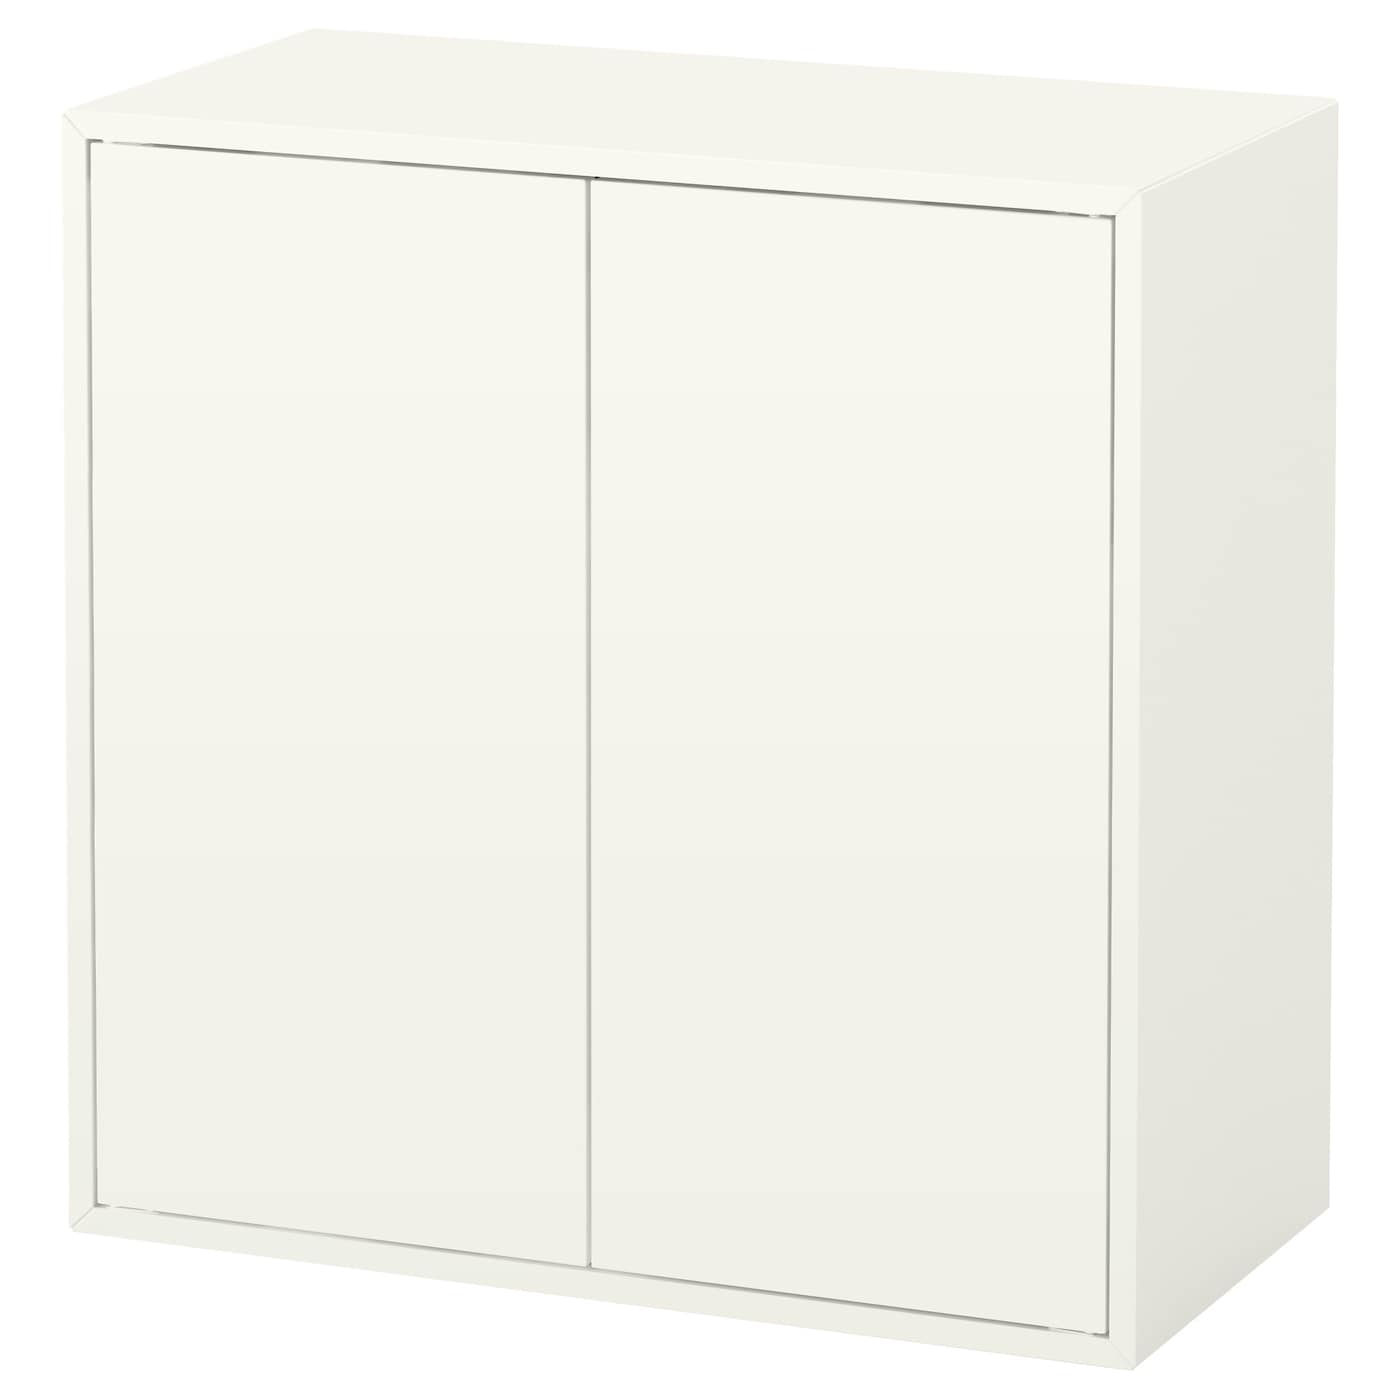 Настенный шкаф - IKEA EKET, 70x35x70 см, белый, ЭКЕТ ИКЕА